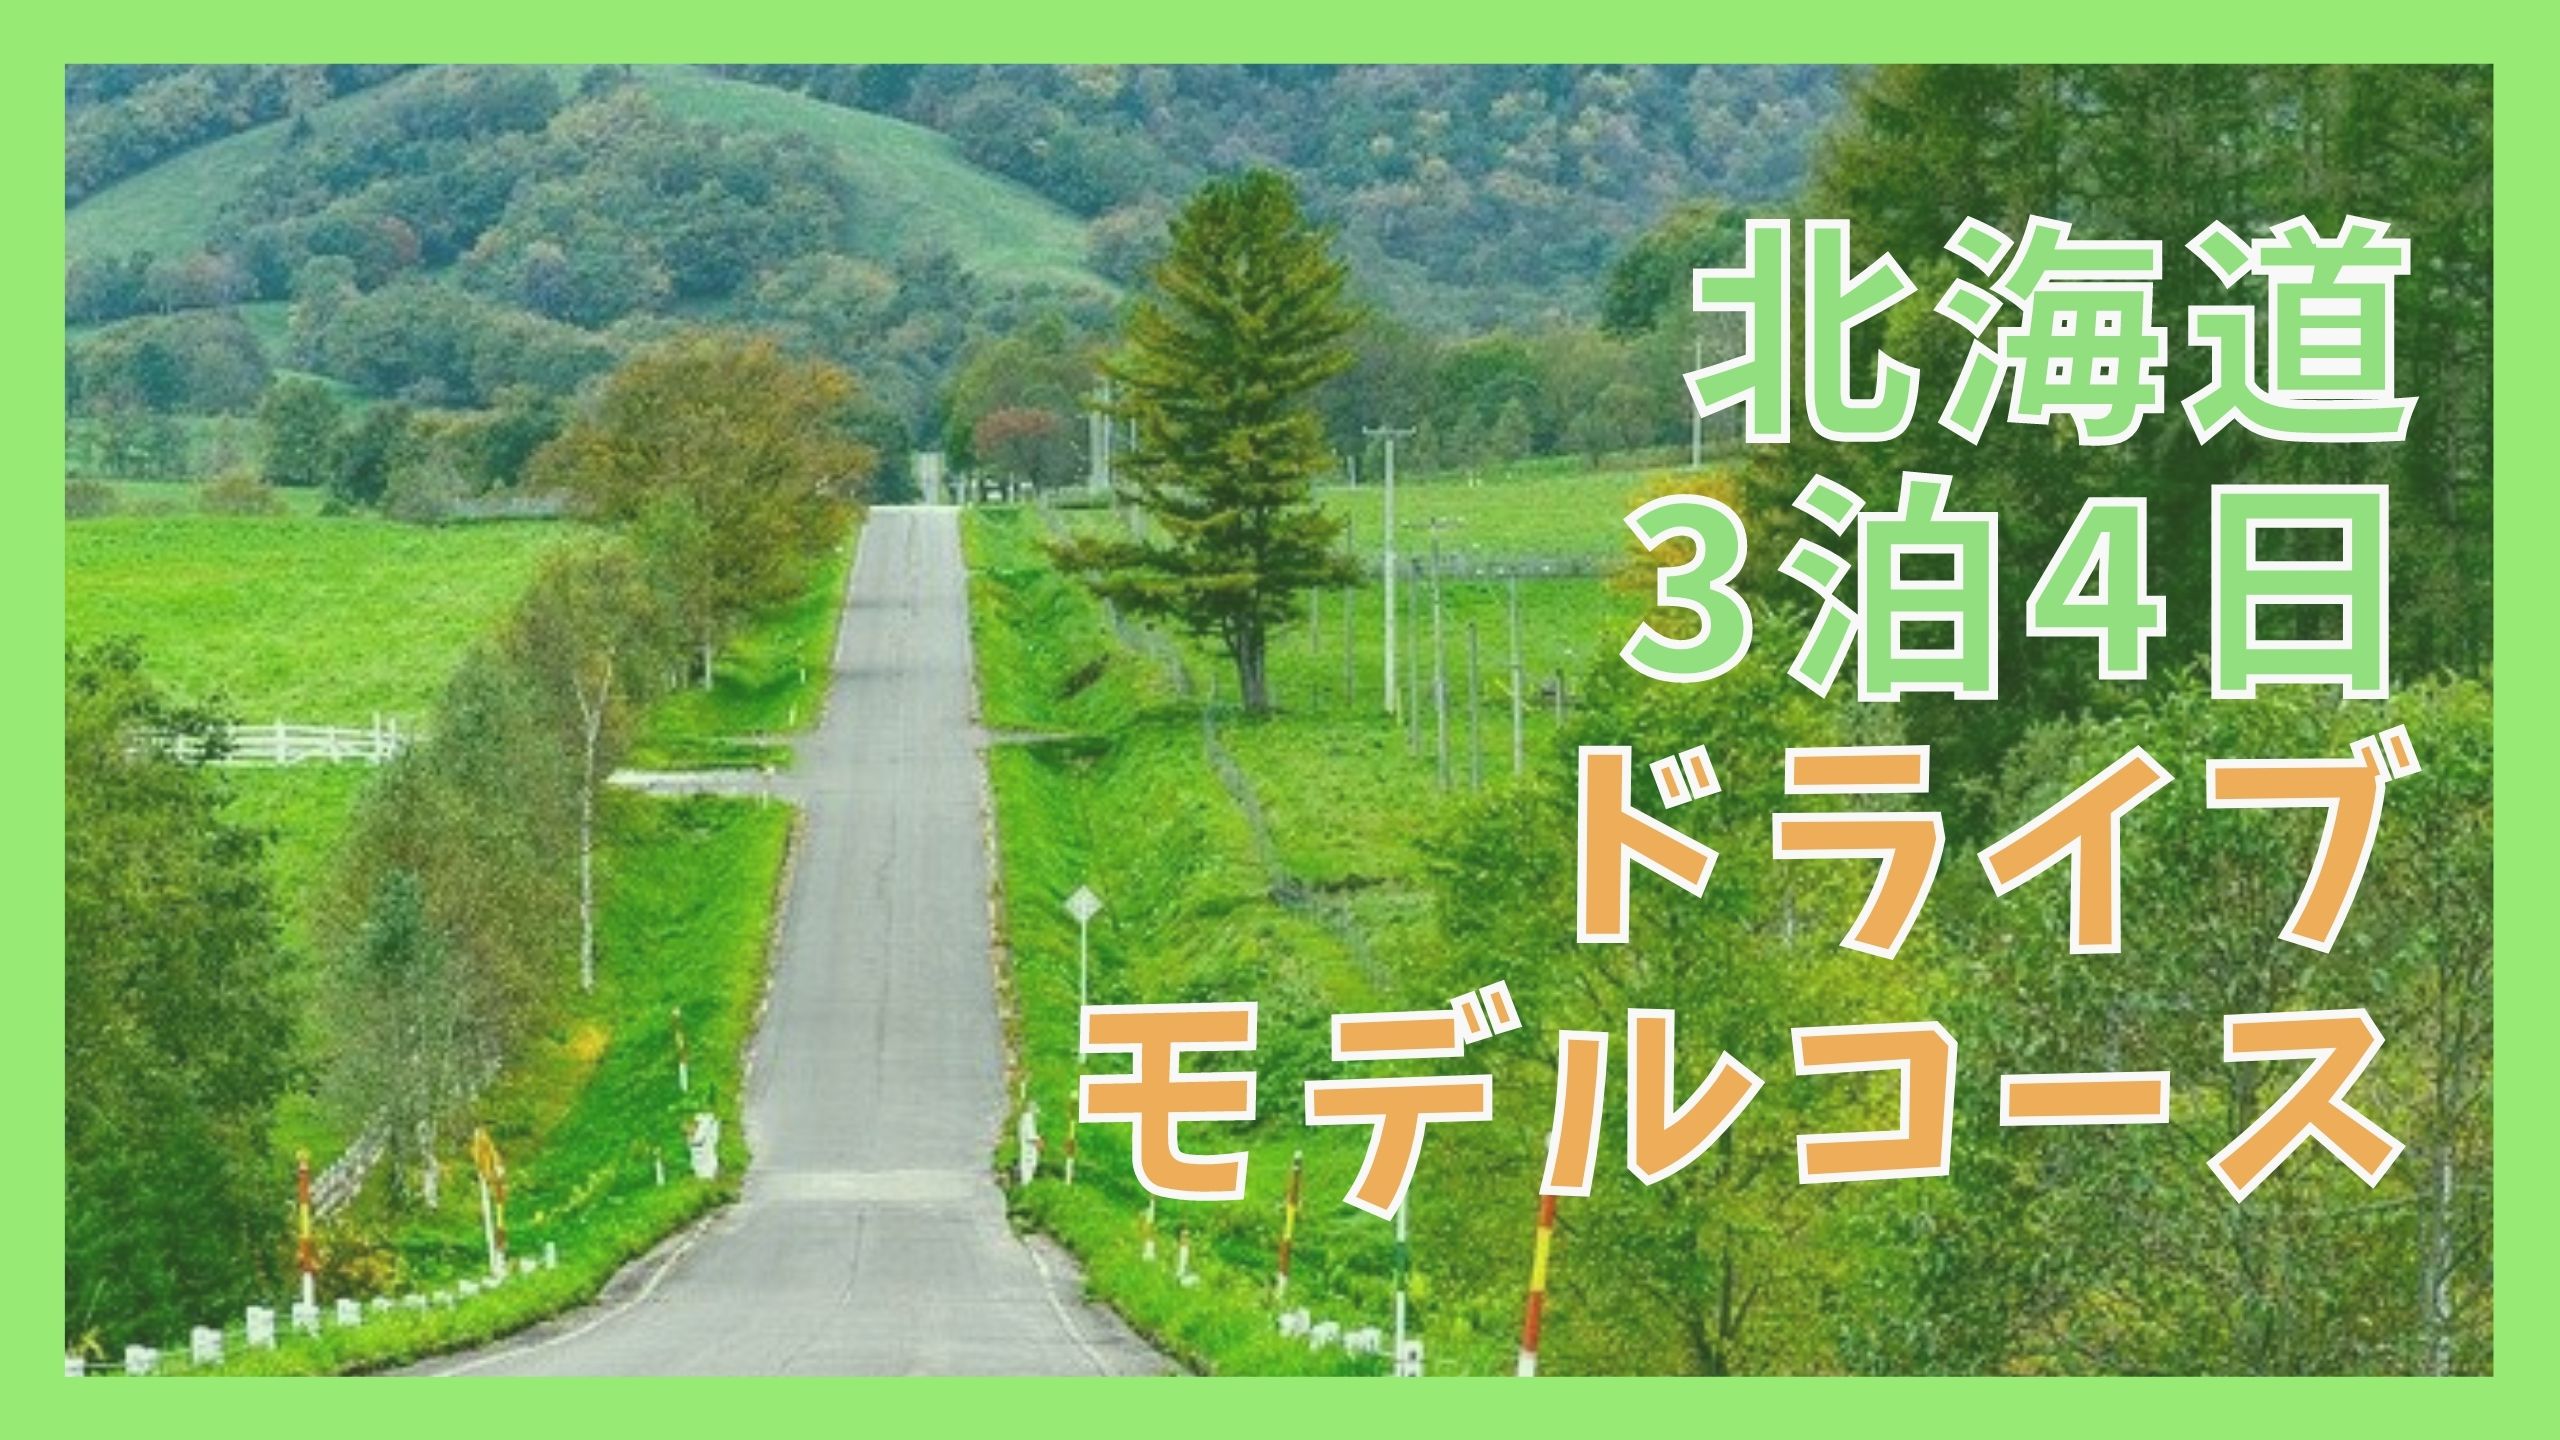 北海道観光モデルコース 3泊4日で5つの町を周遊ドライブ ジャパンワンダラー